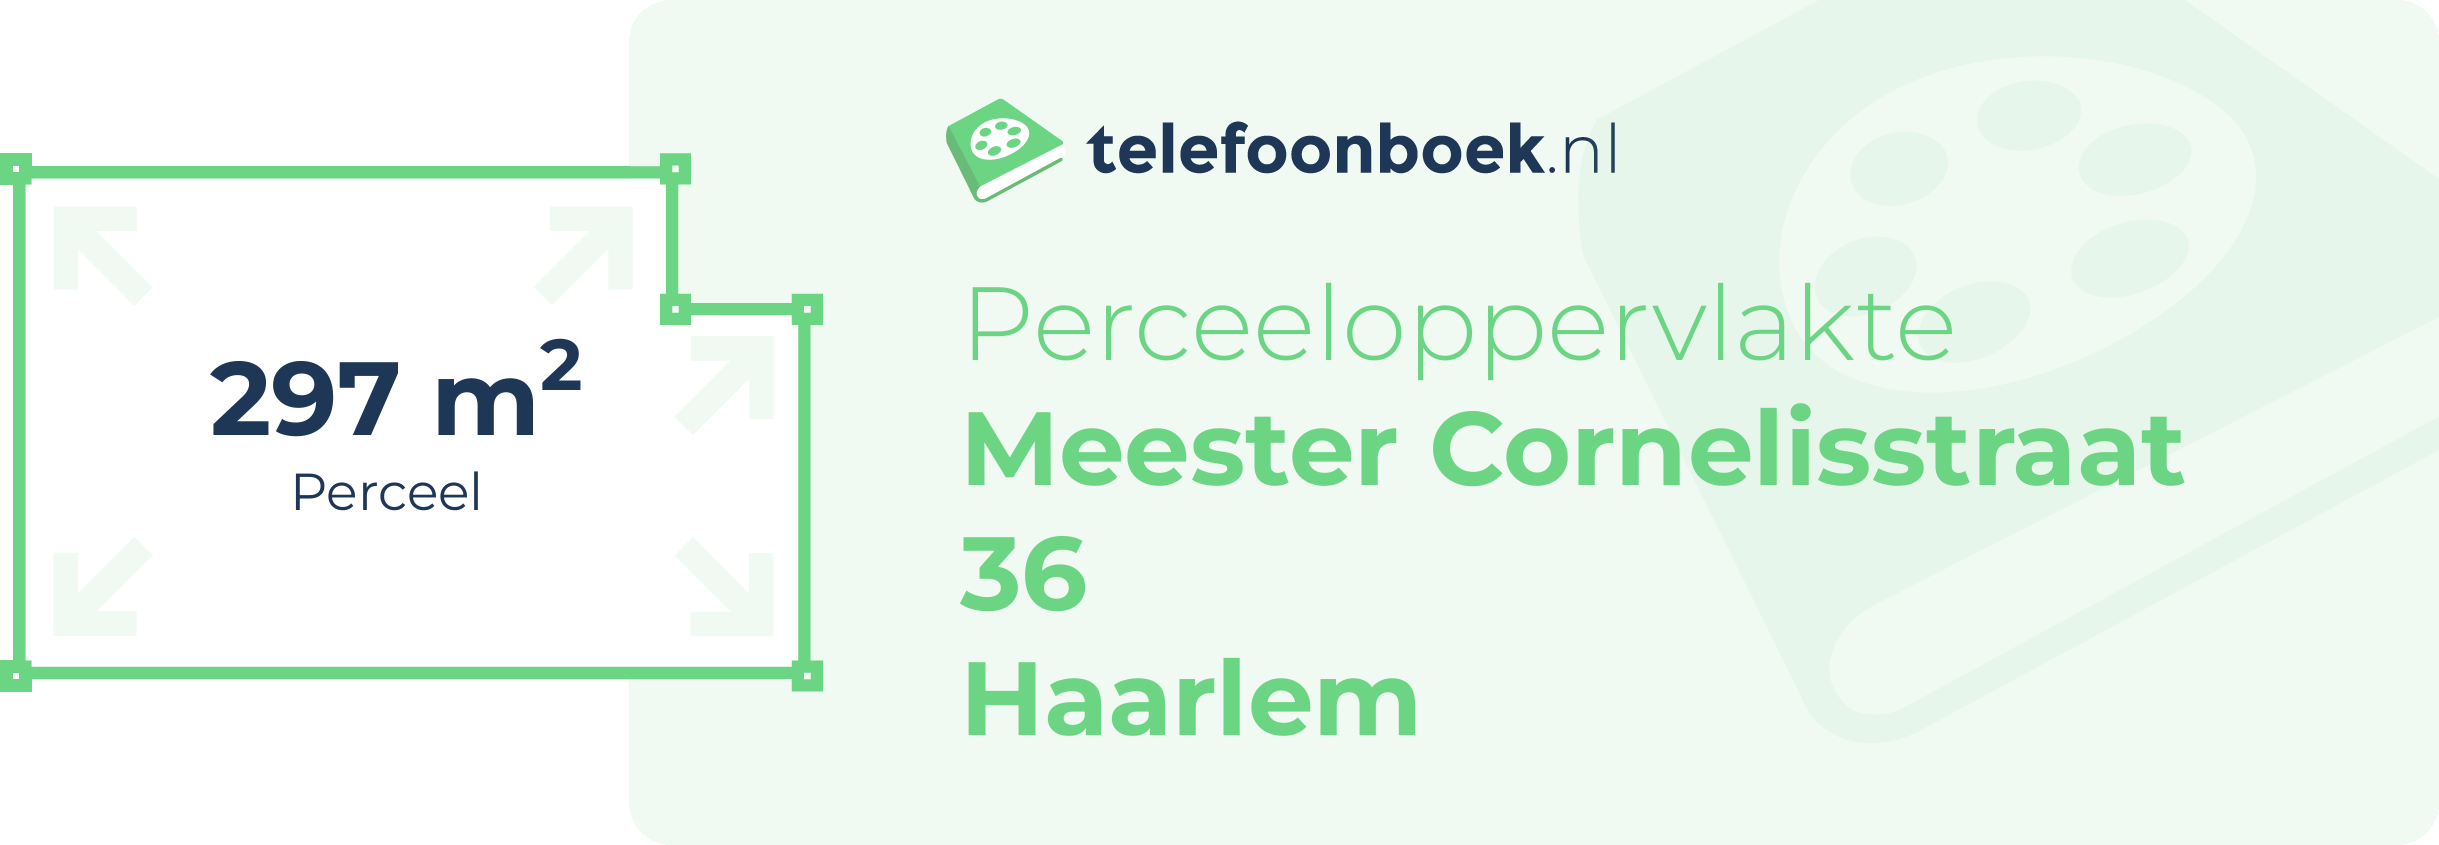 Perceeloppervlakte Meester Cornelisstraat 36 Haarlem